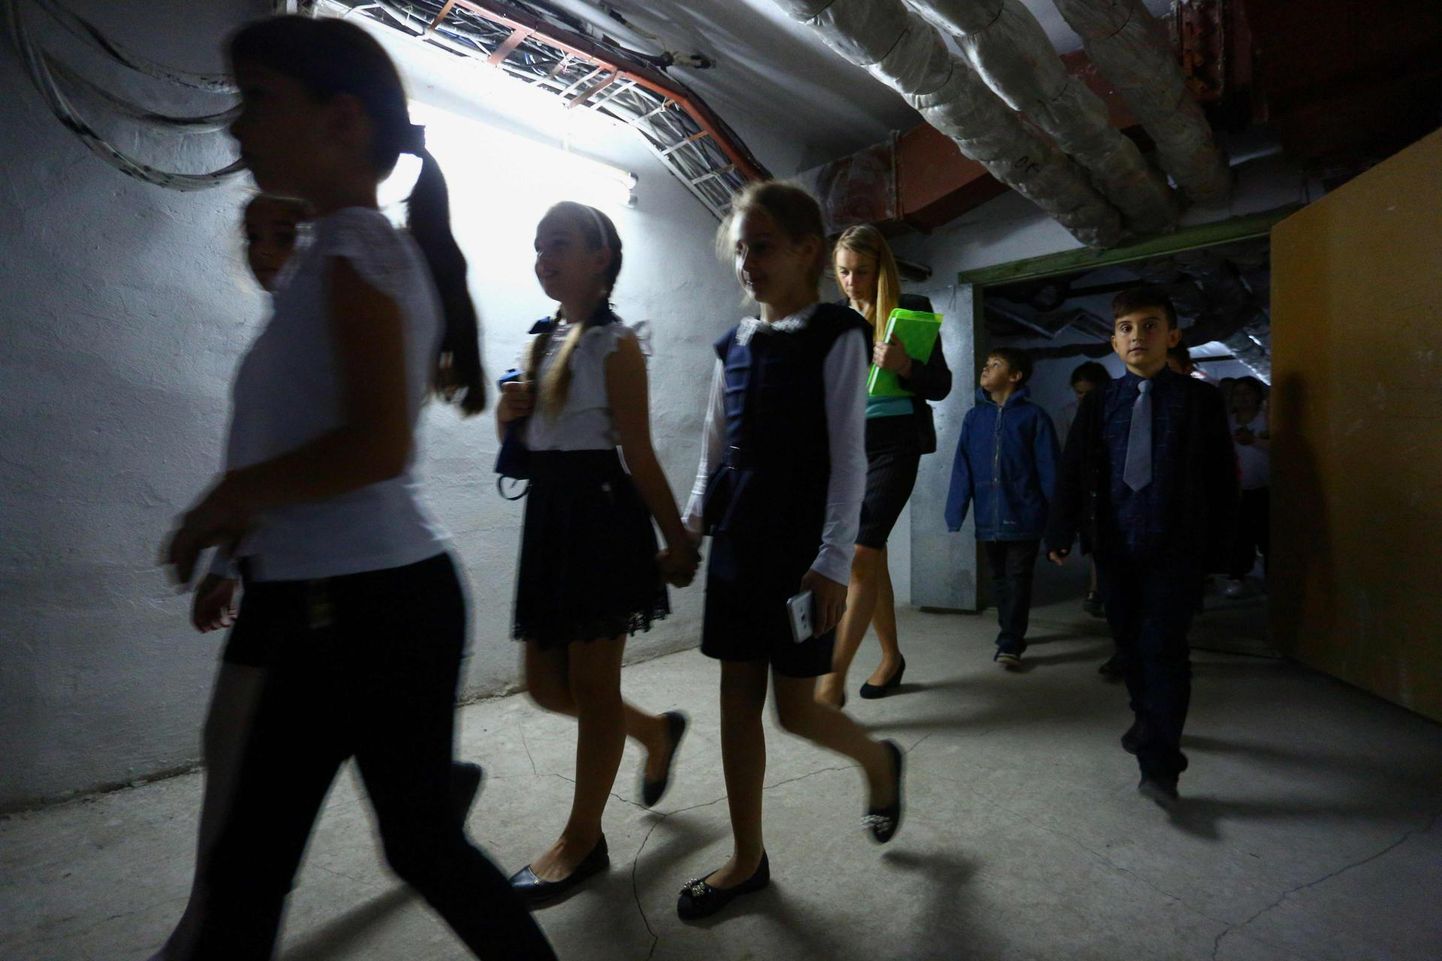 Sartana kooli nr 8 õpilased suunduvad õppehäire ajal maa-alusesse varjendisse.